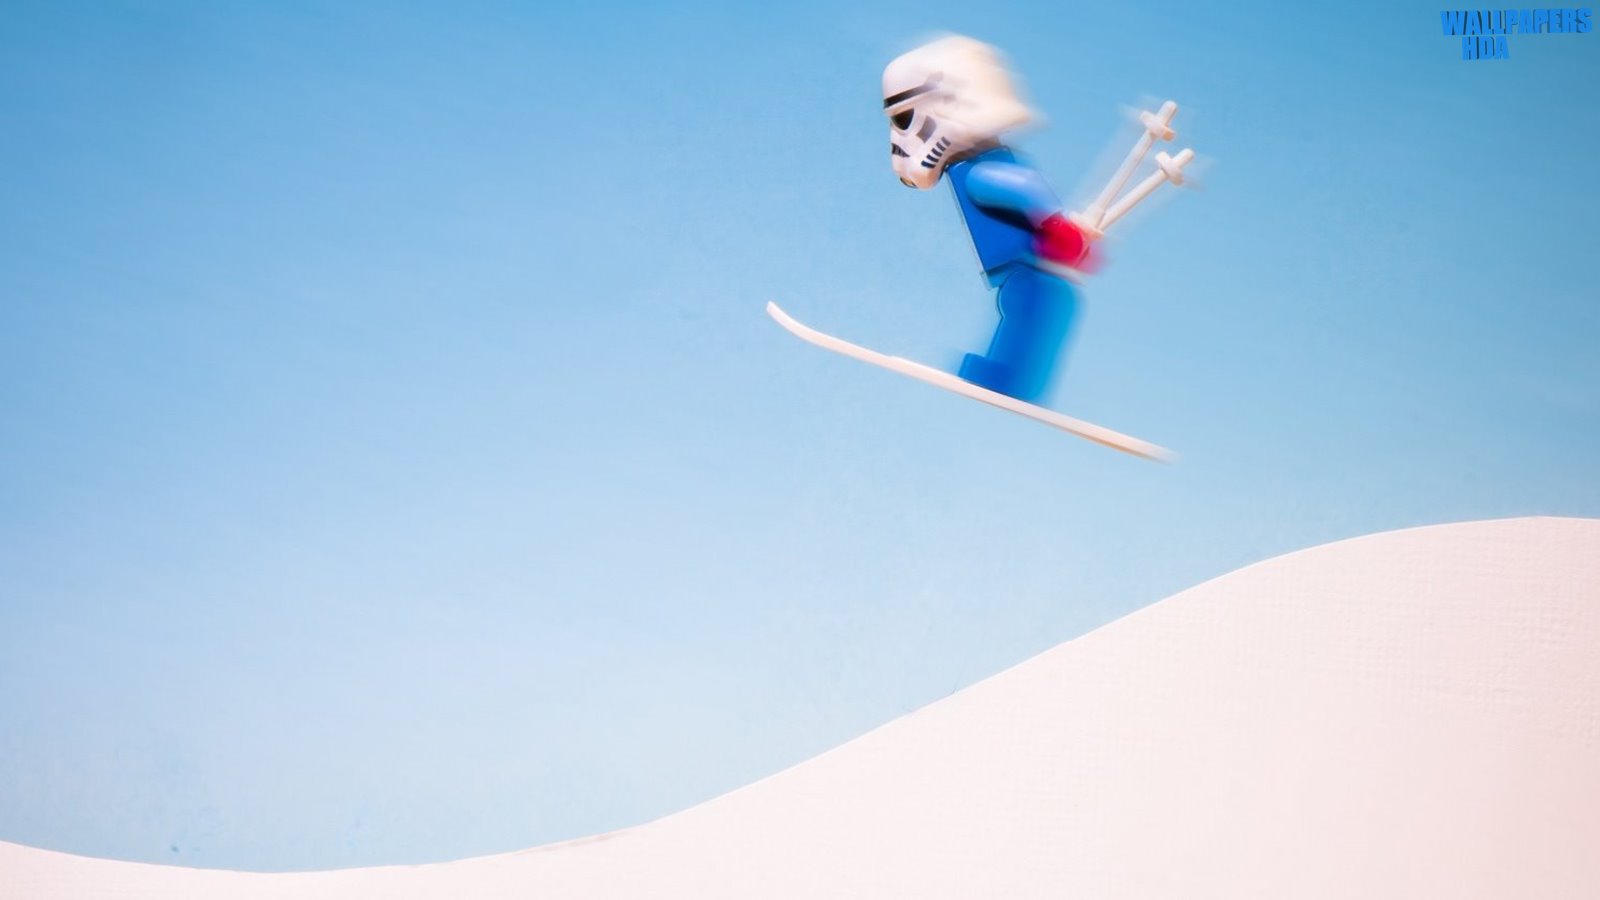 Stormtrooper skiing wallpaper 1600x900